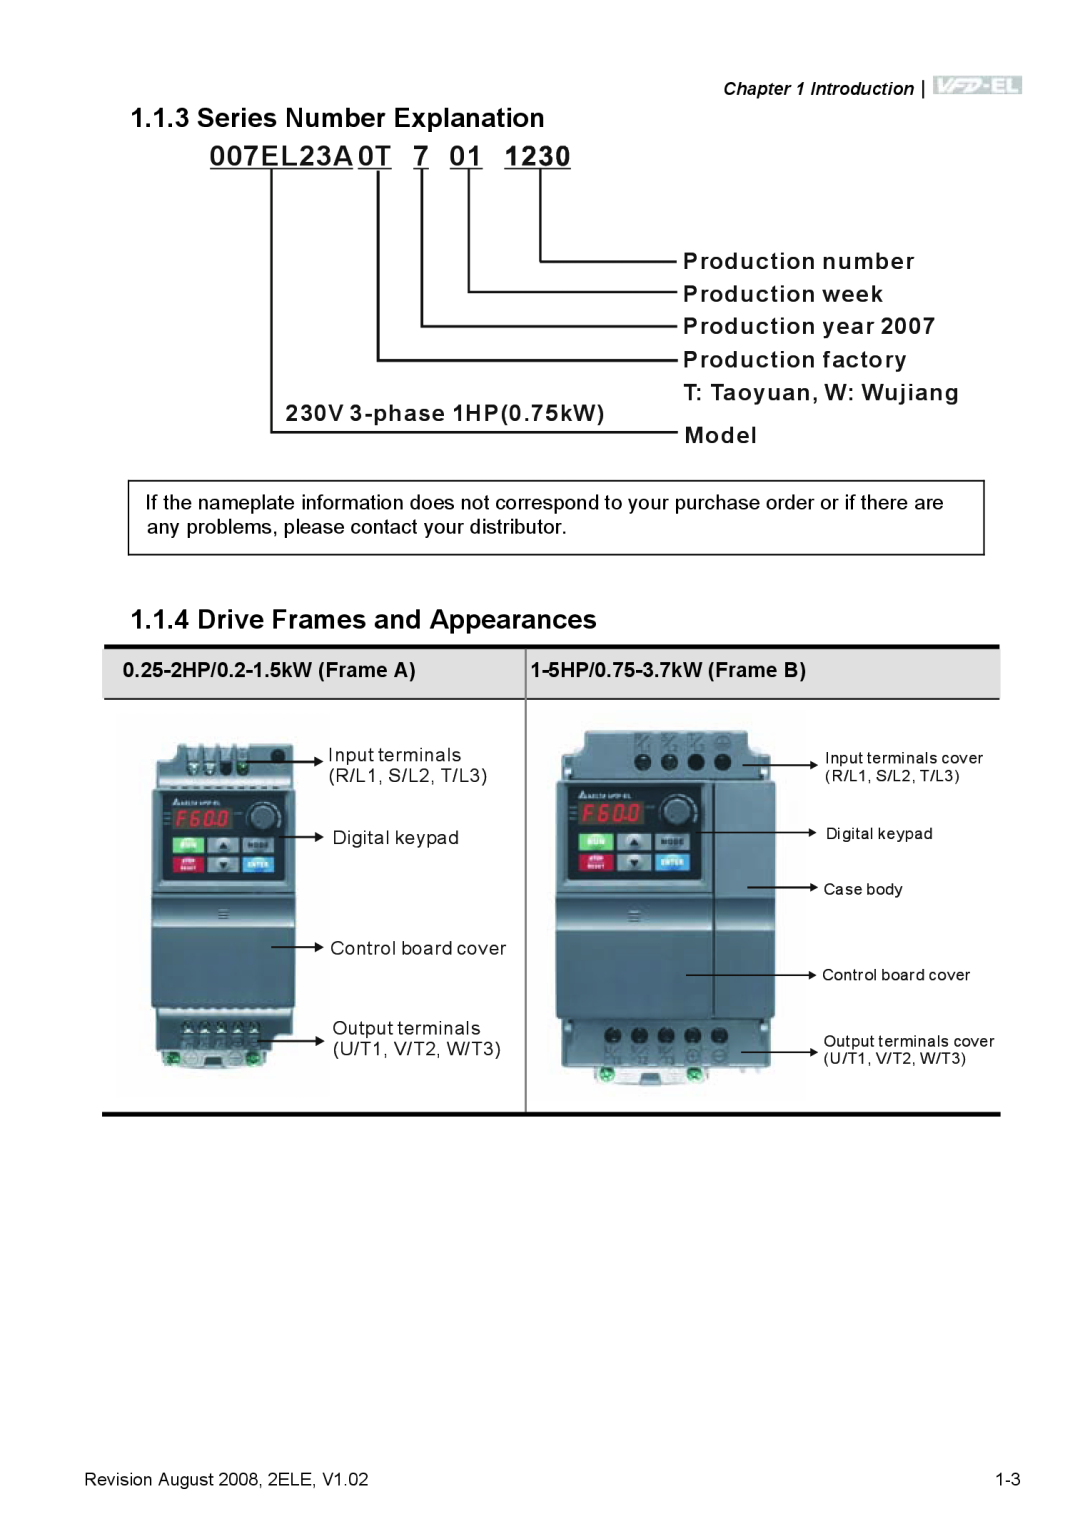 Delta Electronics VFD-EL Series Number Explanation 007EL23A 0T 7, Drive Frames and Appearances, Introduction, Case body 